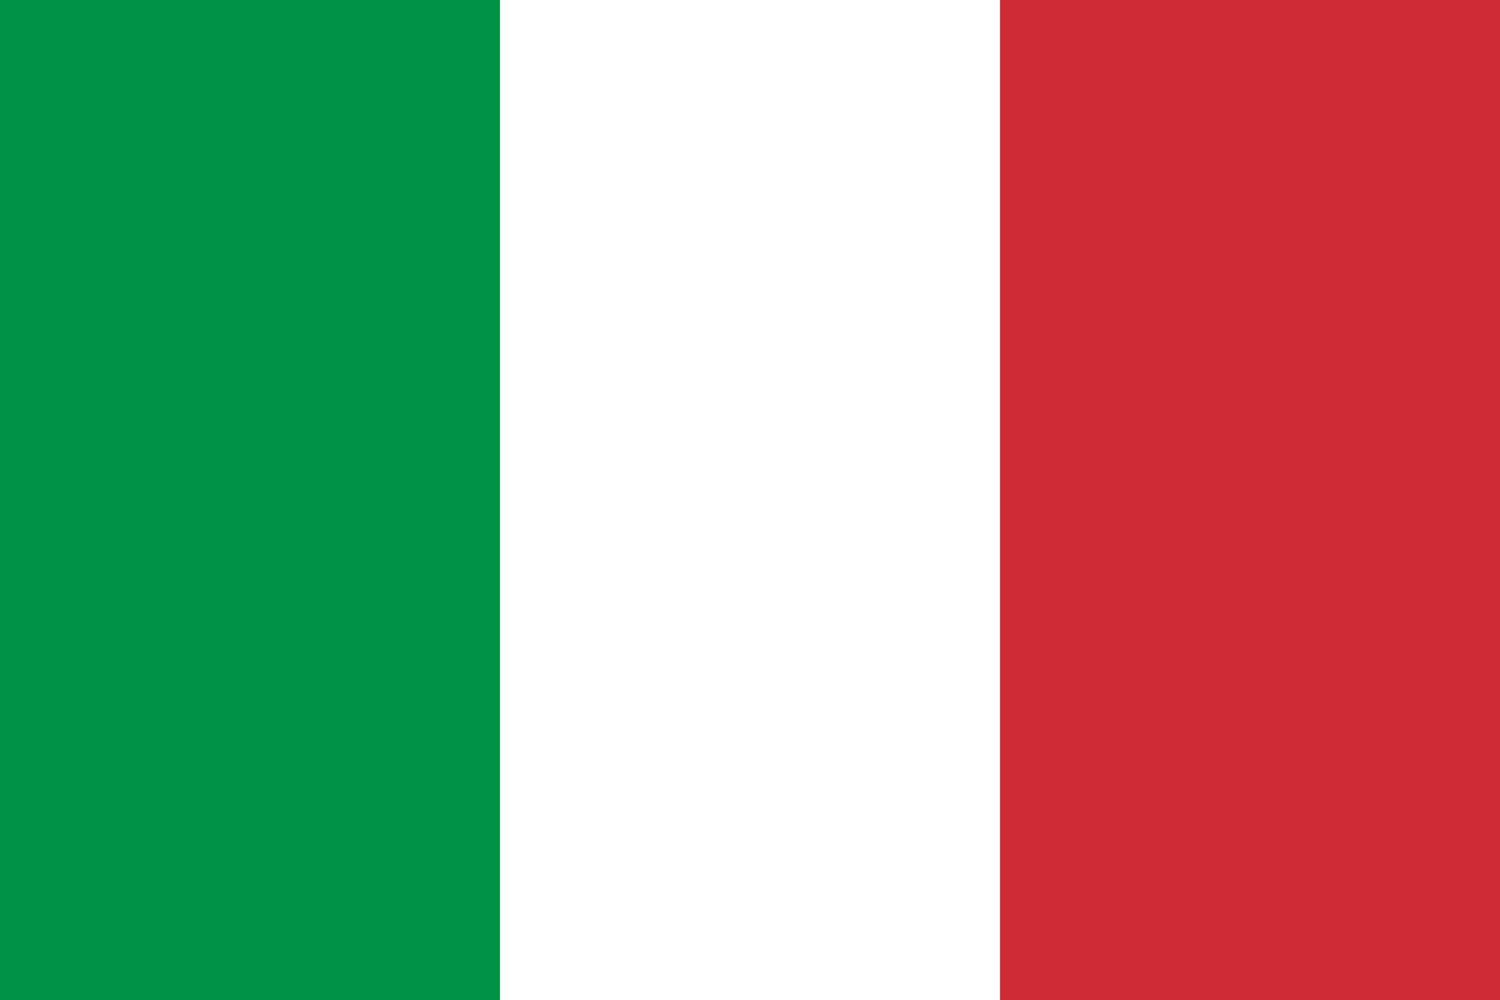 Liga italiana